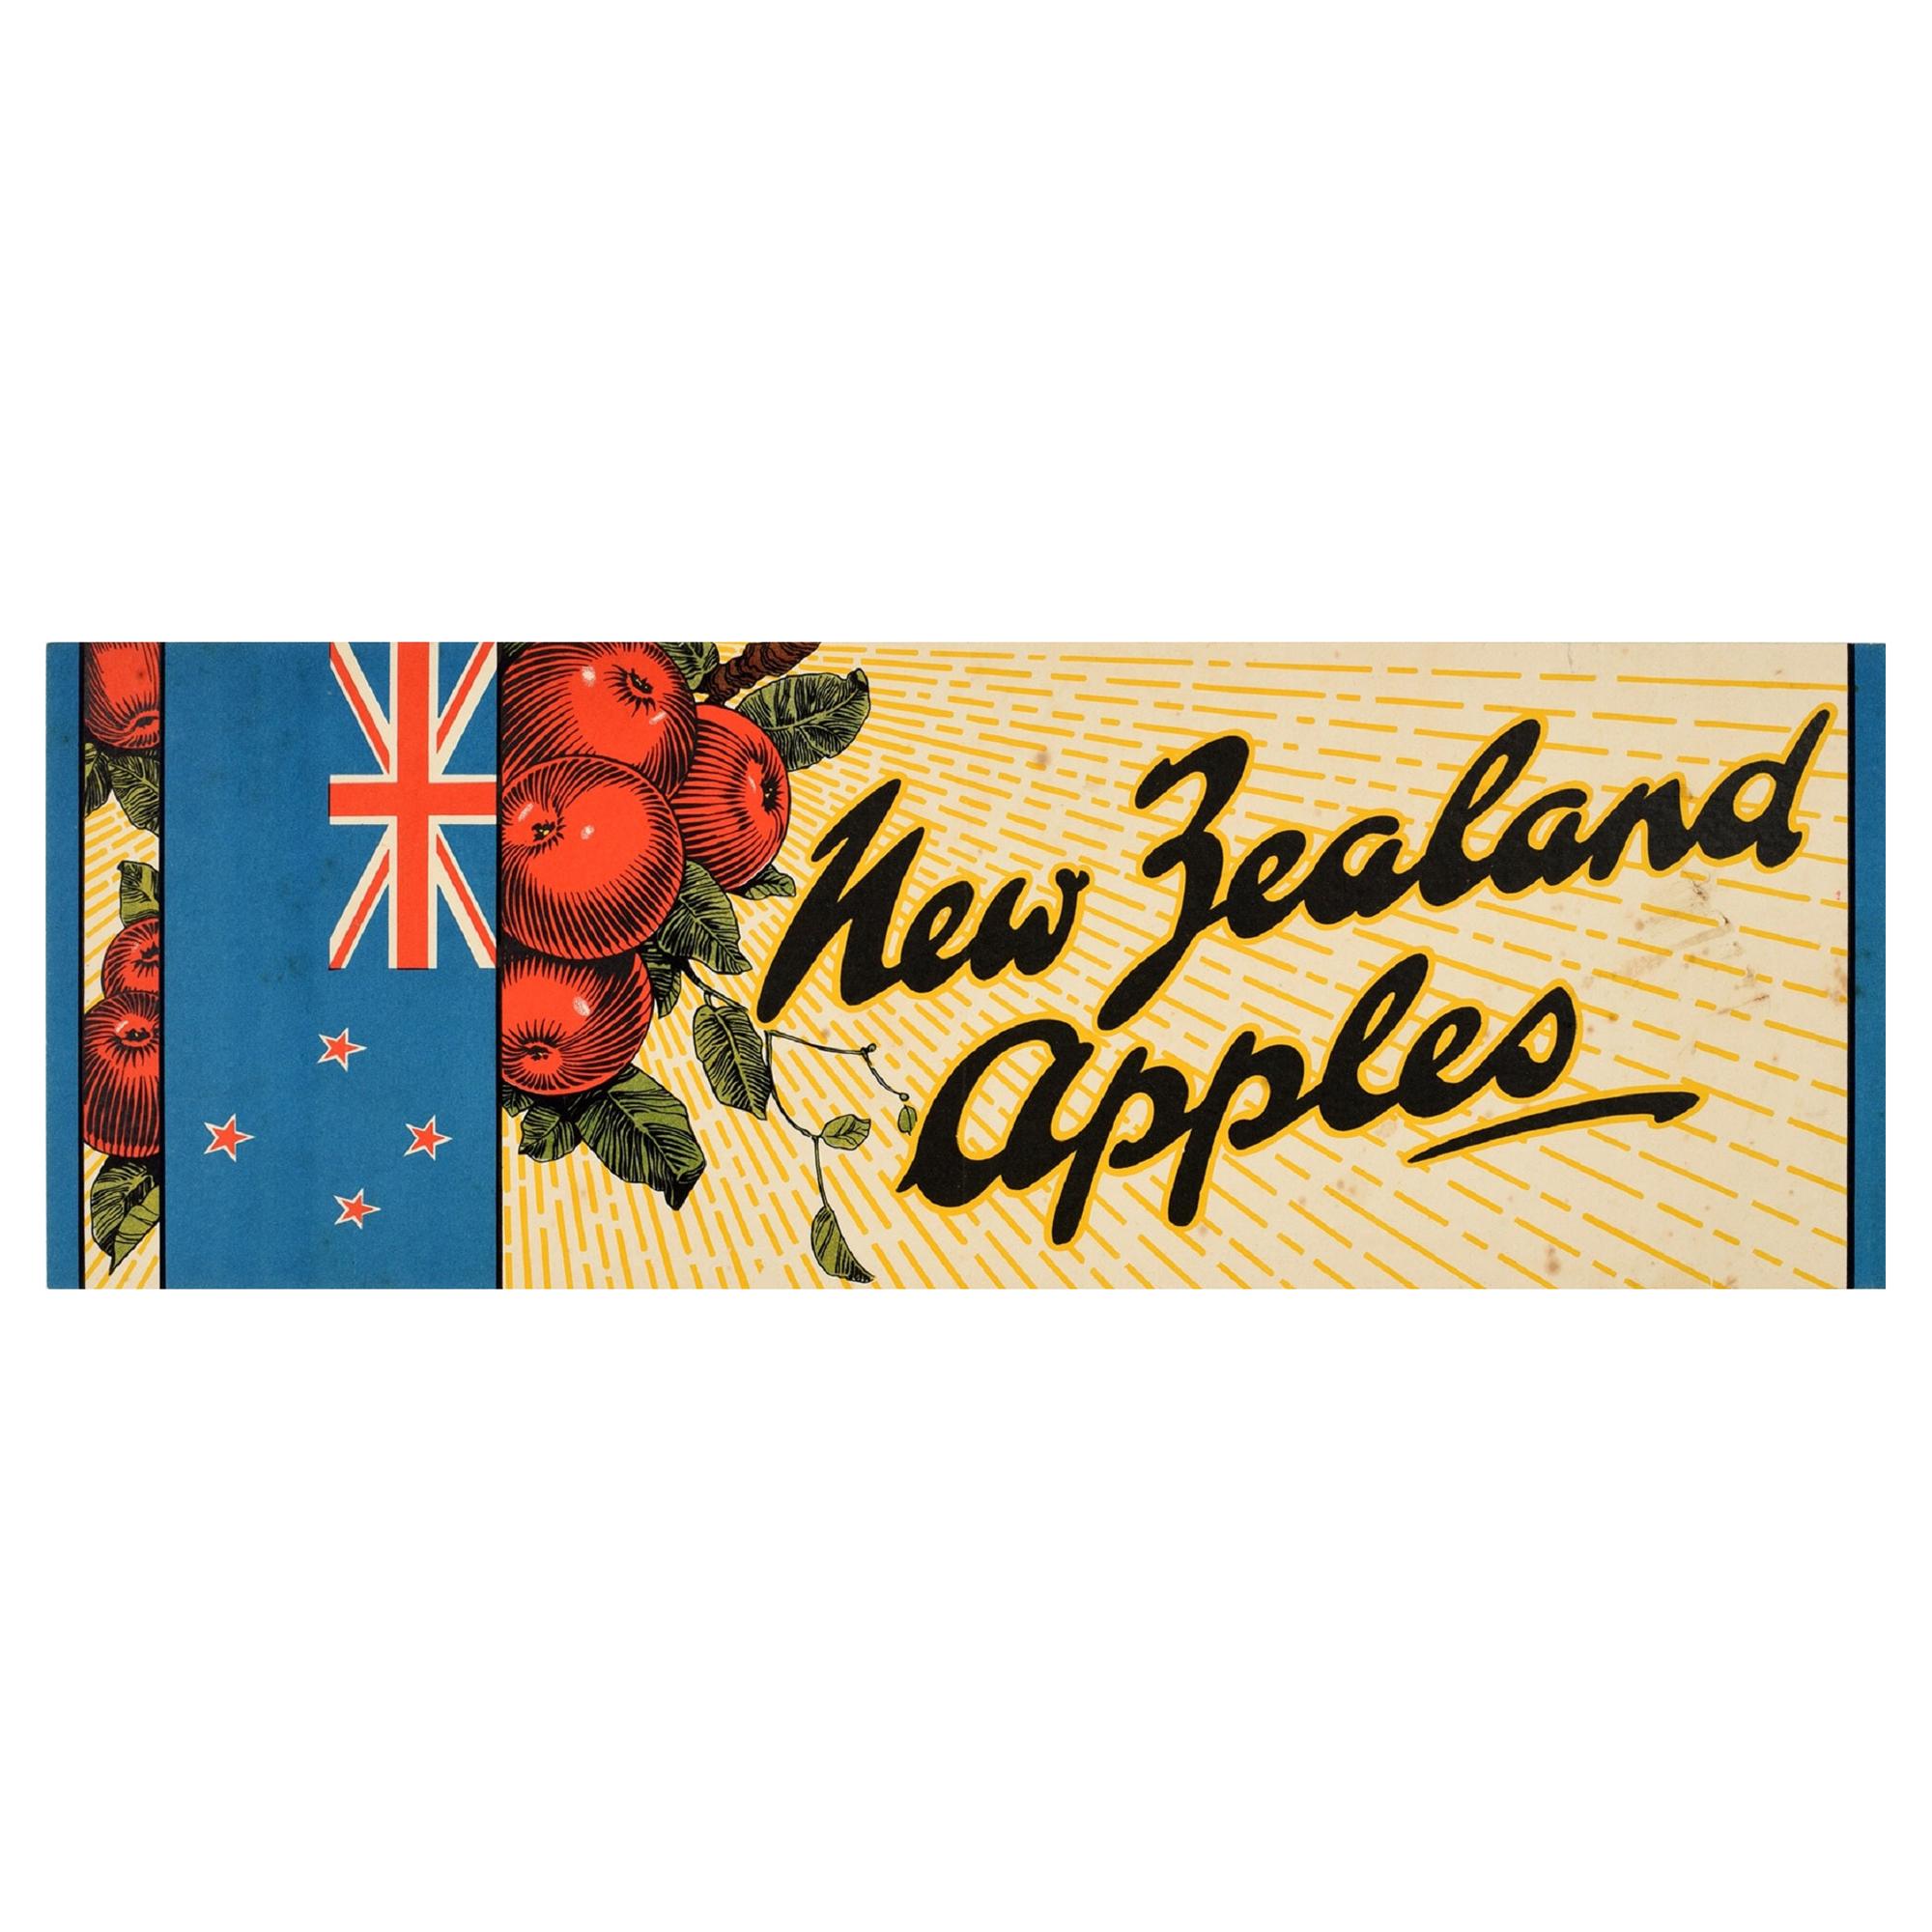 Original Vintage Poster New Zealand Apples NZ Flag Fruit Food Advertising Design